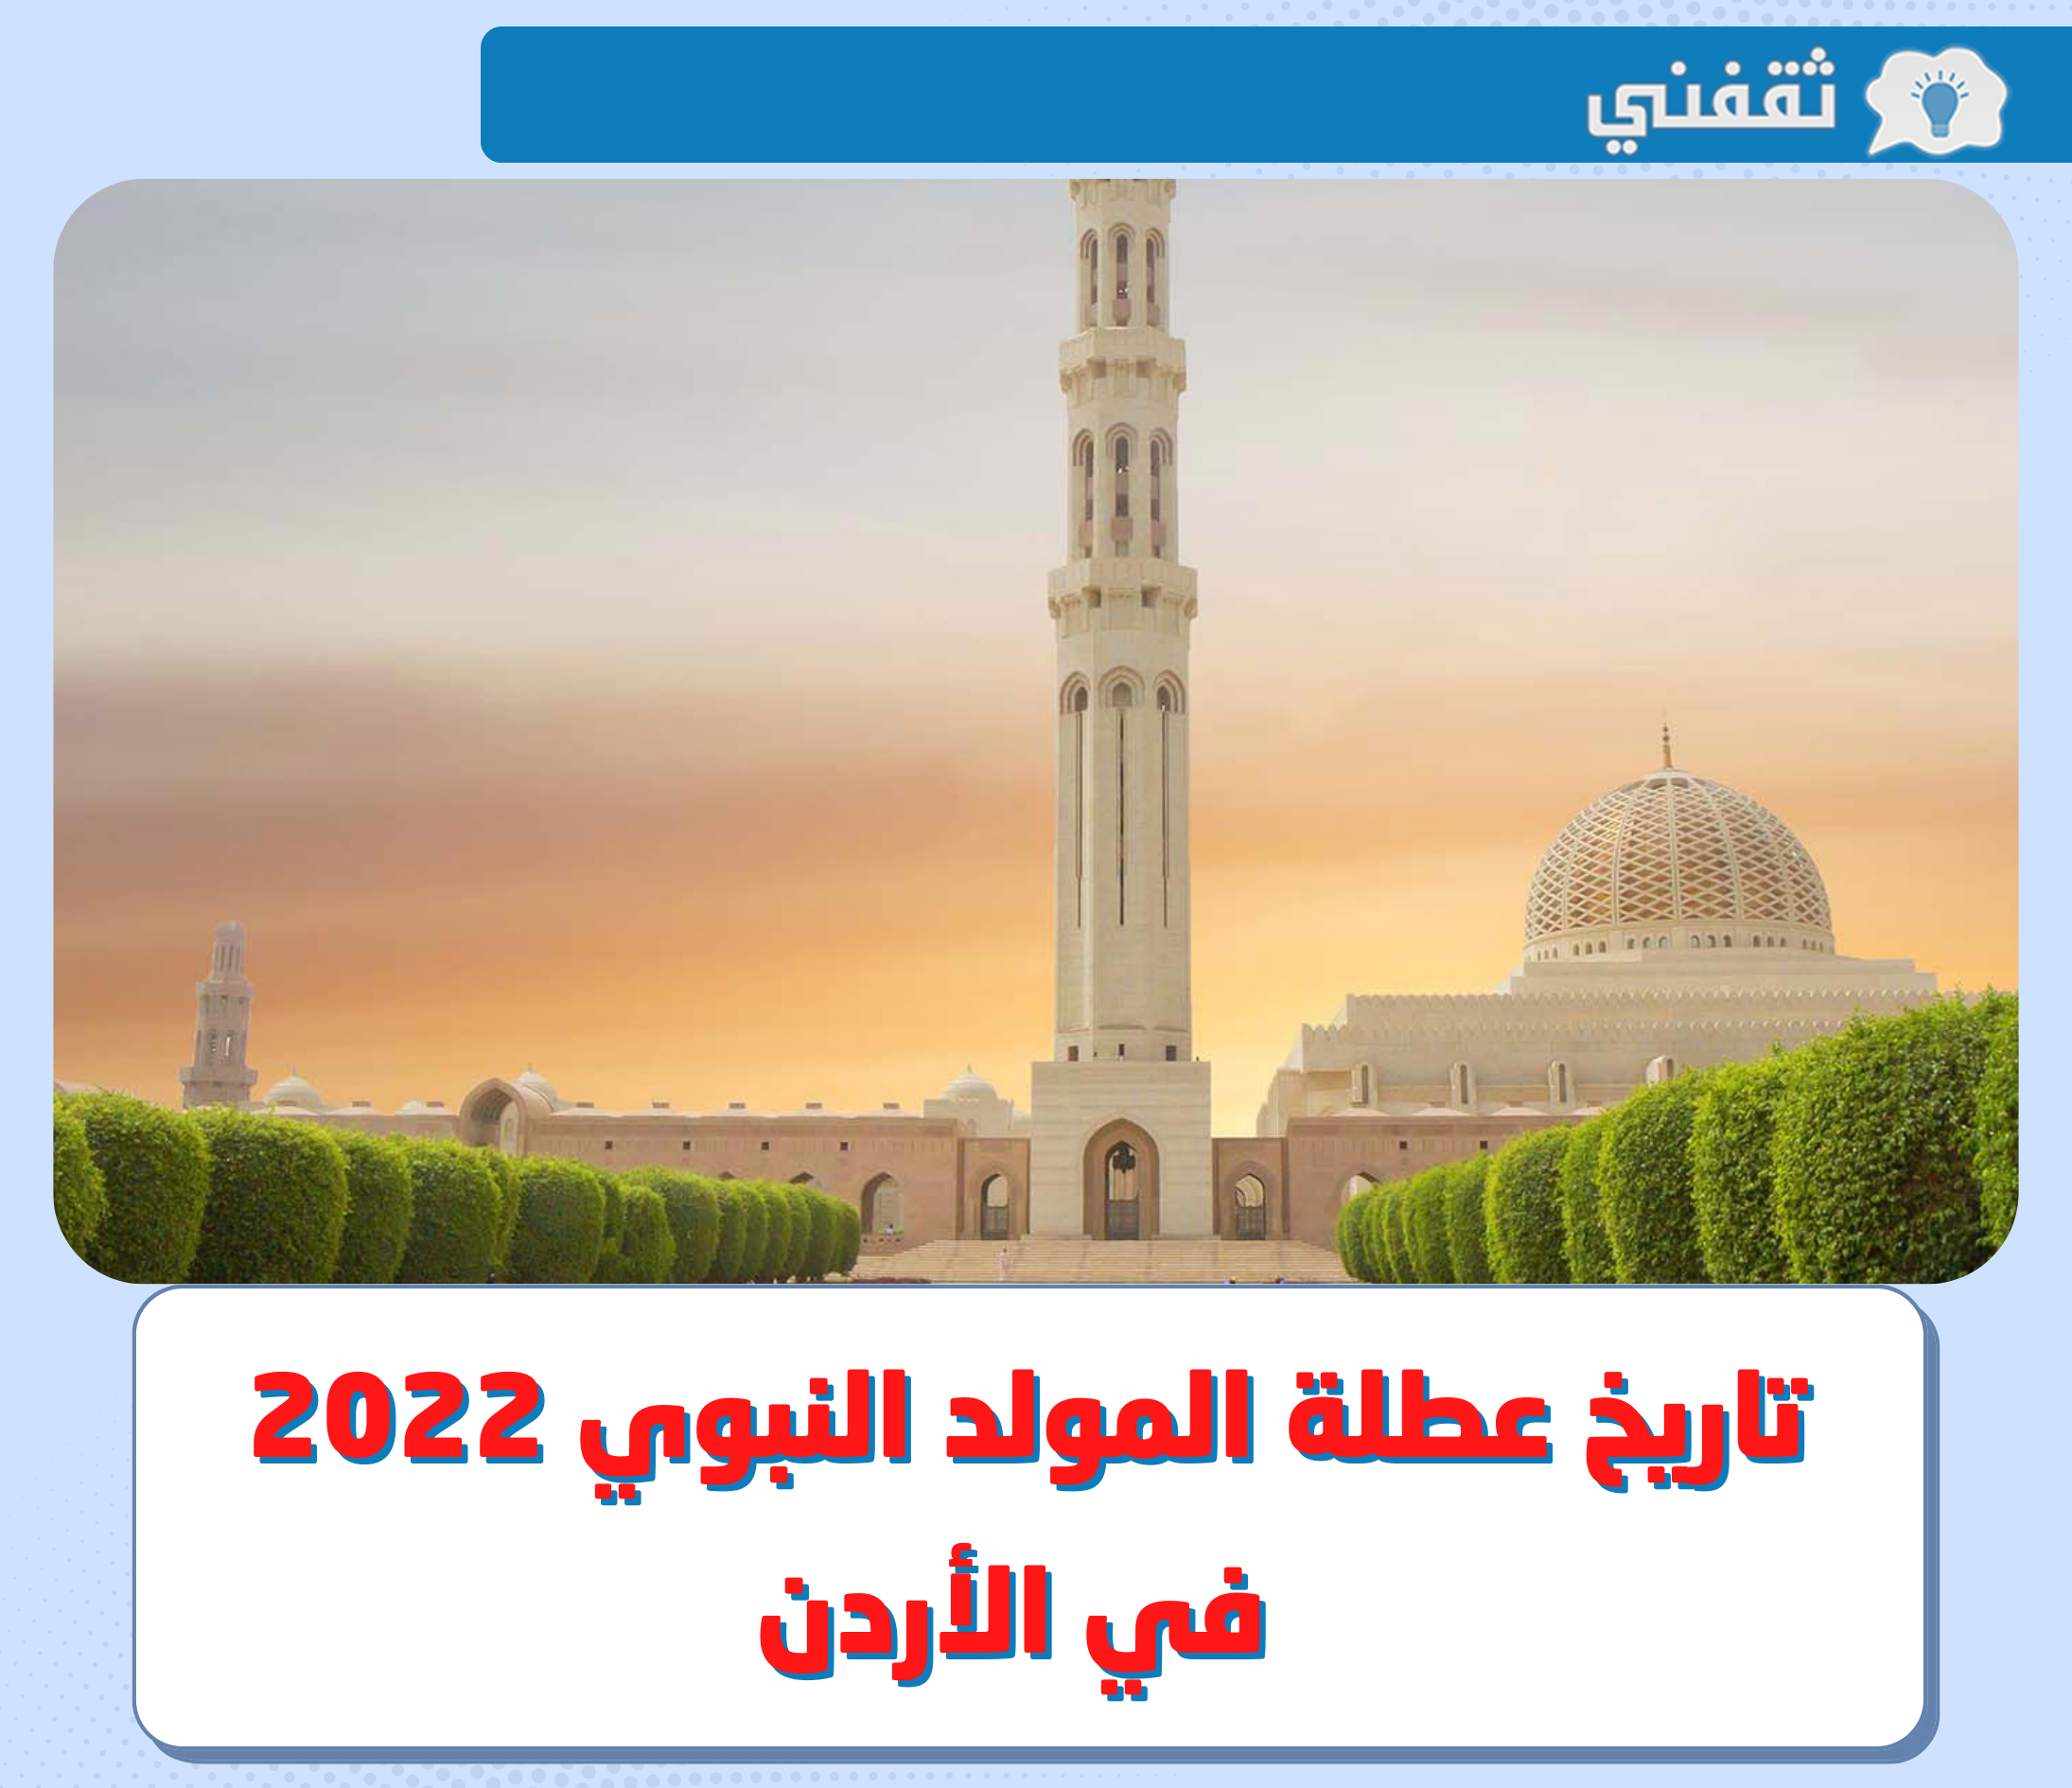 متى تاريخ عطلة المولد النبوي 2022 الأردن .. وأبرز مظاهر الاحتفال بذكري مولد النبي في المملكة